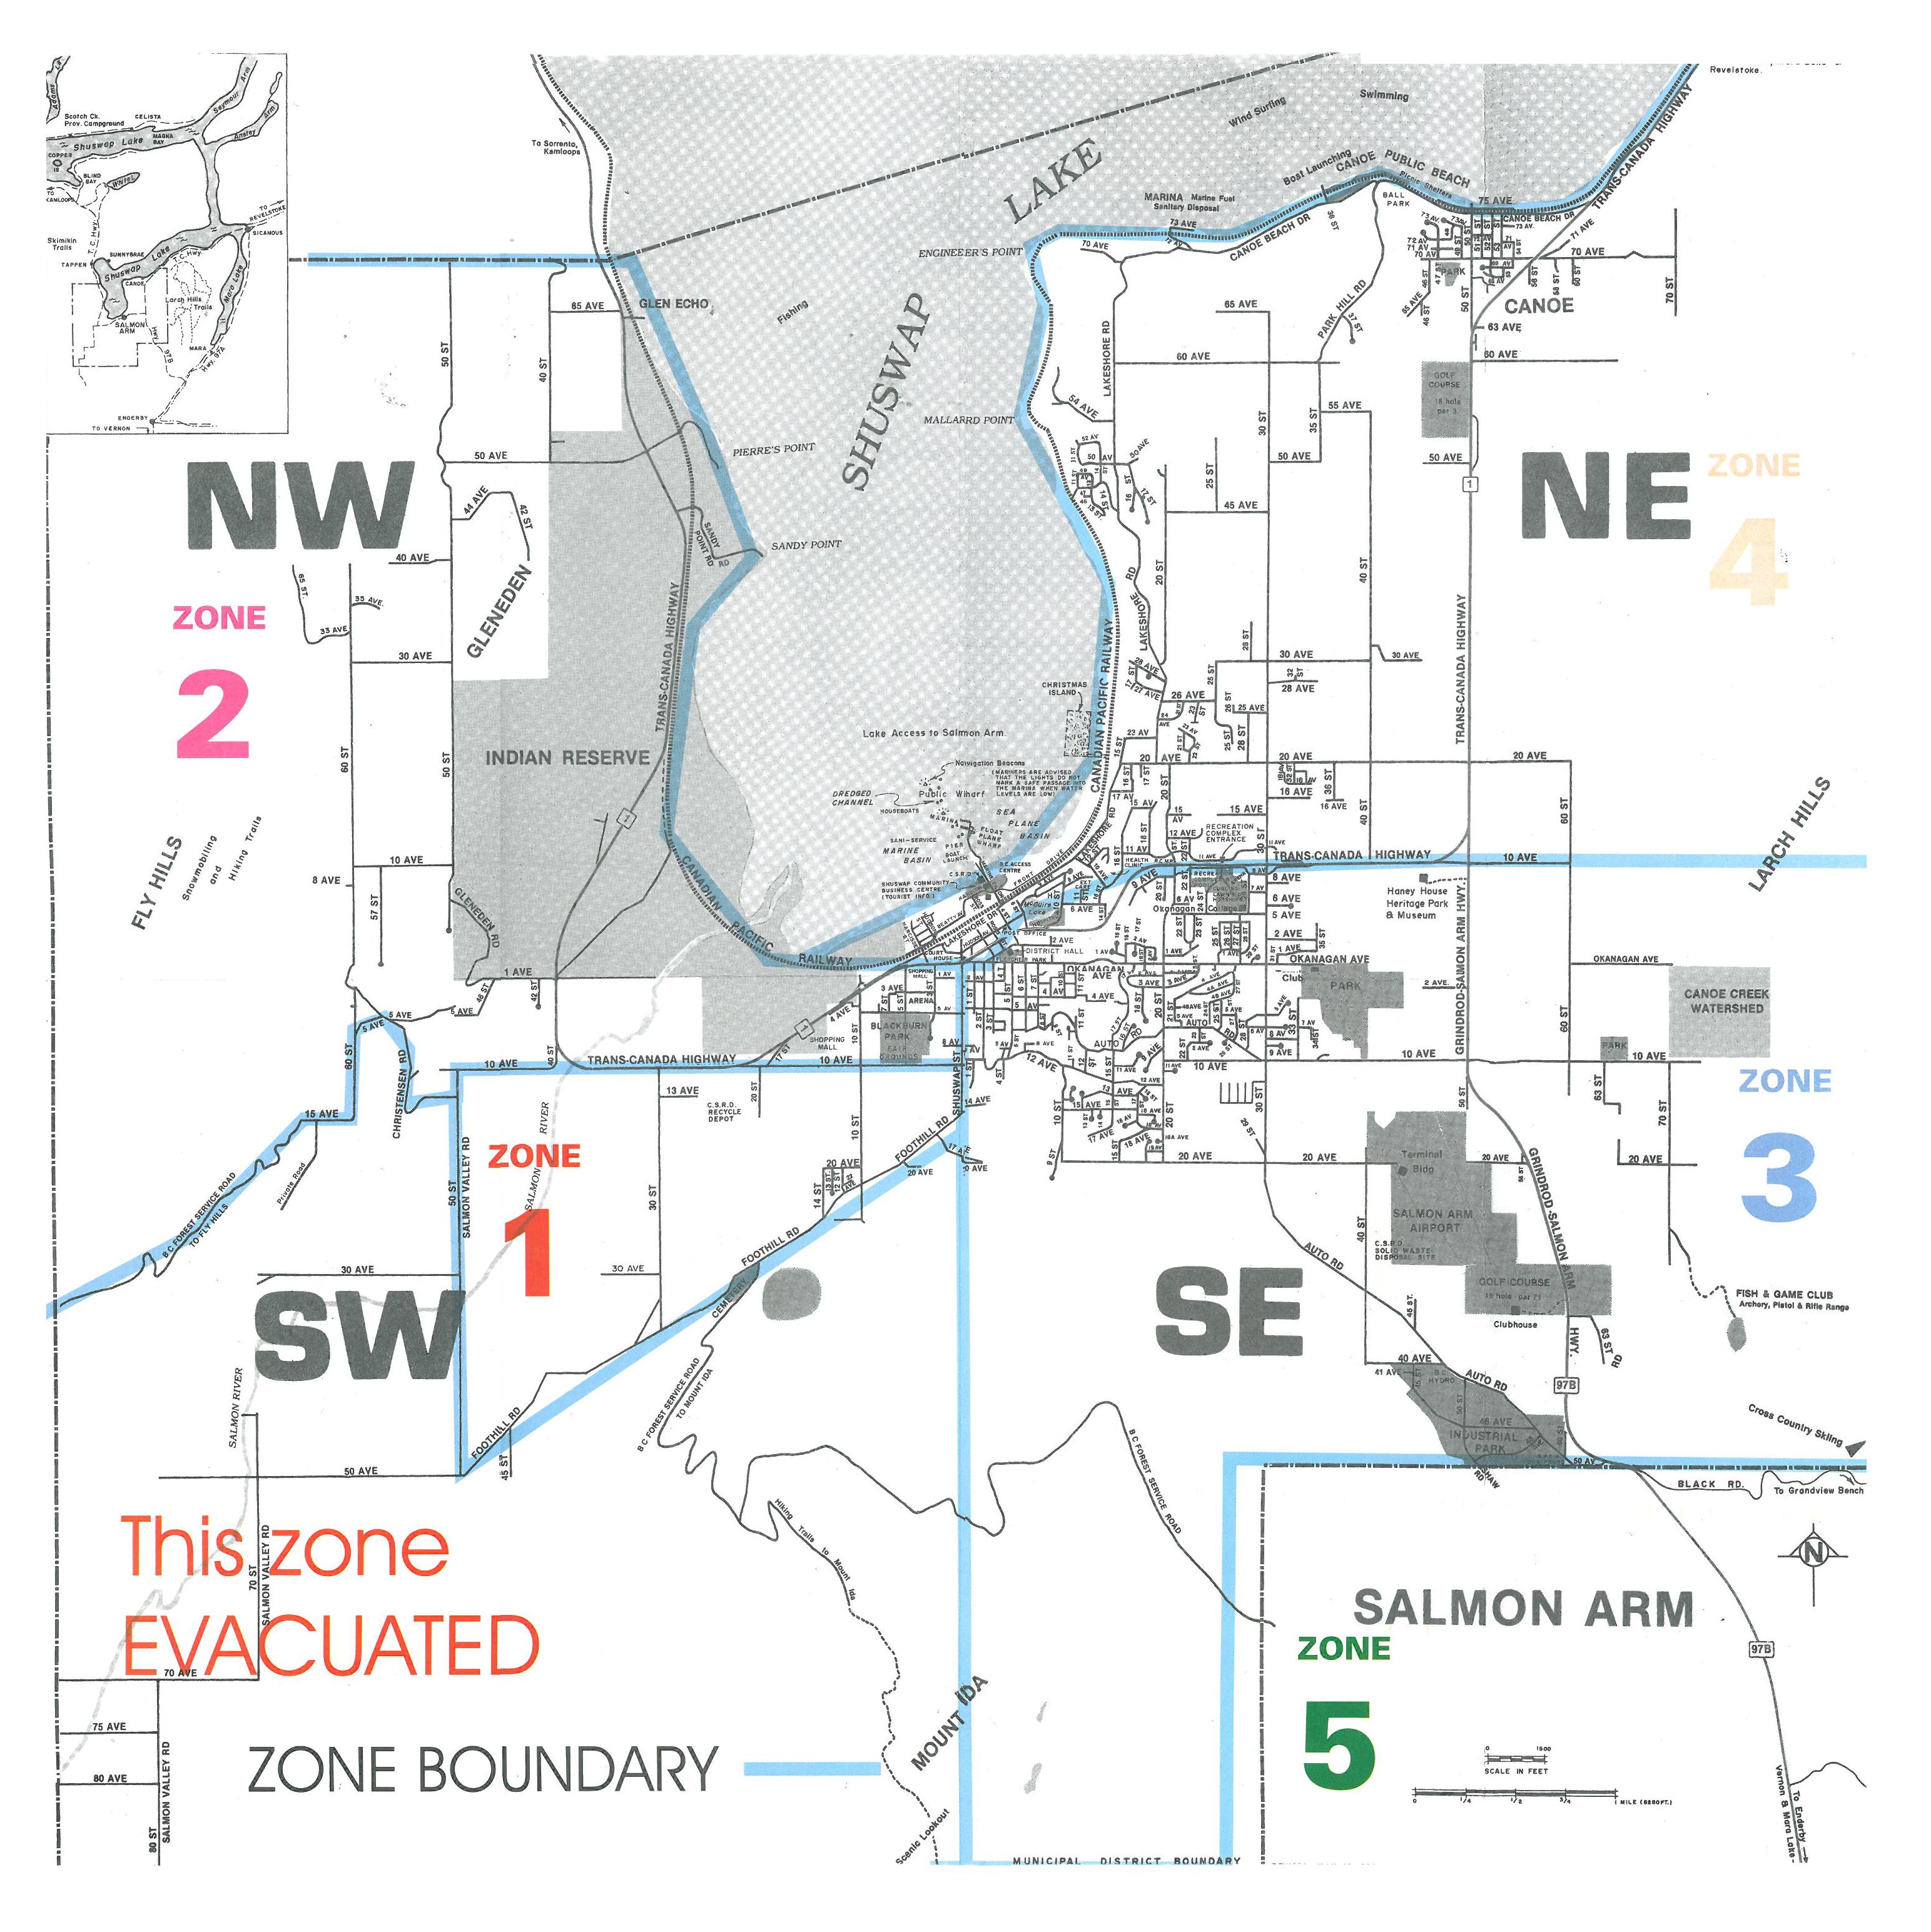 Ceci est la carte d'évacuation de Salmon Arm émise pendant le feu de 1998. La communauté était divisée en 5 zones. La zone 1 longeait les collines Fly au sud-ouest de la ville. L'incendie de Silver Creek a brûlé hors de contrôle dans cette zone, détruisant plusieurs maisons. Au nord de la zone 1 était la zone 2 aussi près des collines Fly mais qui n'a pas été évacuée. La zone 3 était à l'est de la zone 2, fortement peuplée et menacée par le feu. Les zones 4 et 5, situées au nord et au sud de la zone 3 n'ont pas été évacuées.